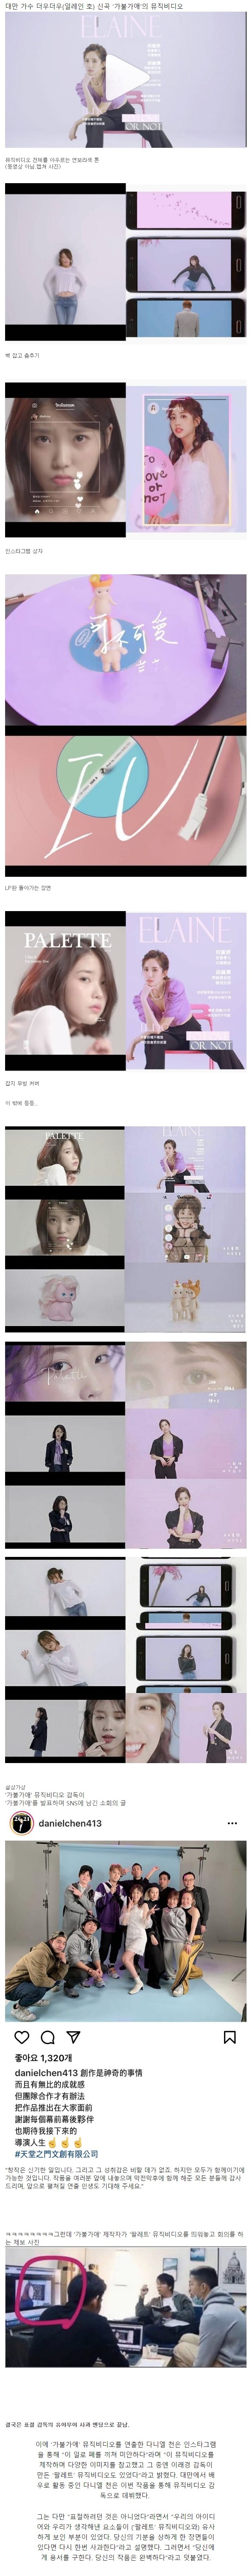 대만 가수 더우더우(일레인 호), 아이유 팔레트 뮤직비디오 표절 논란